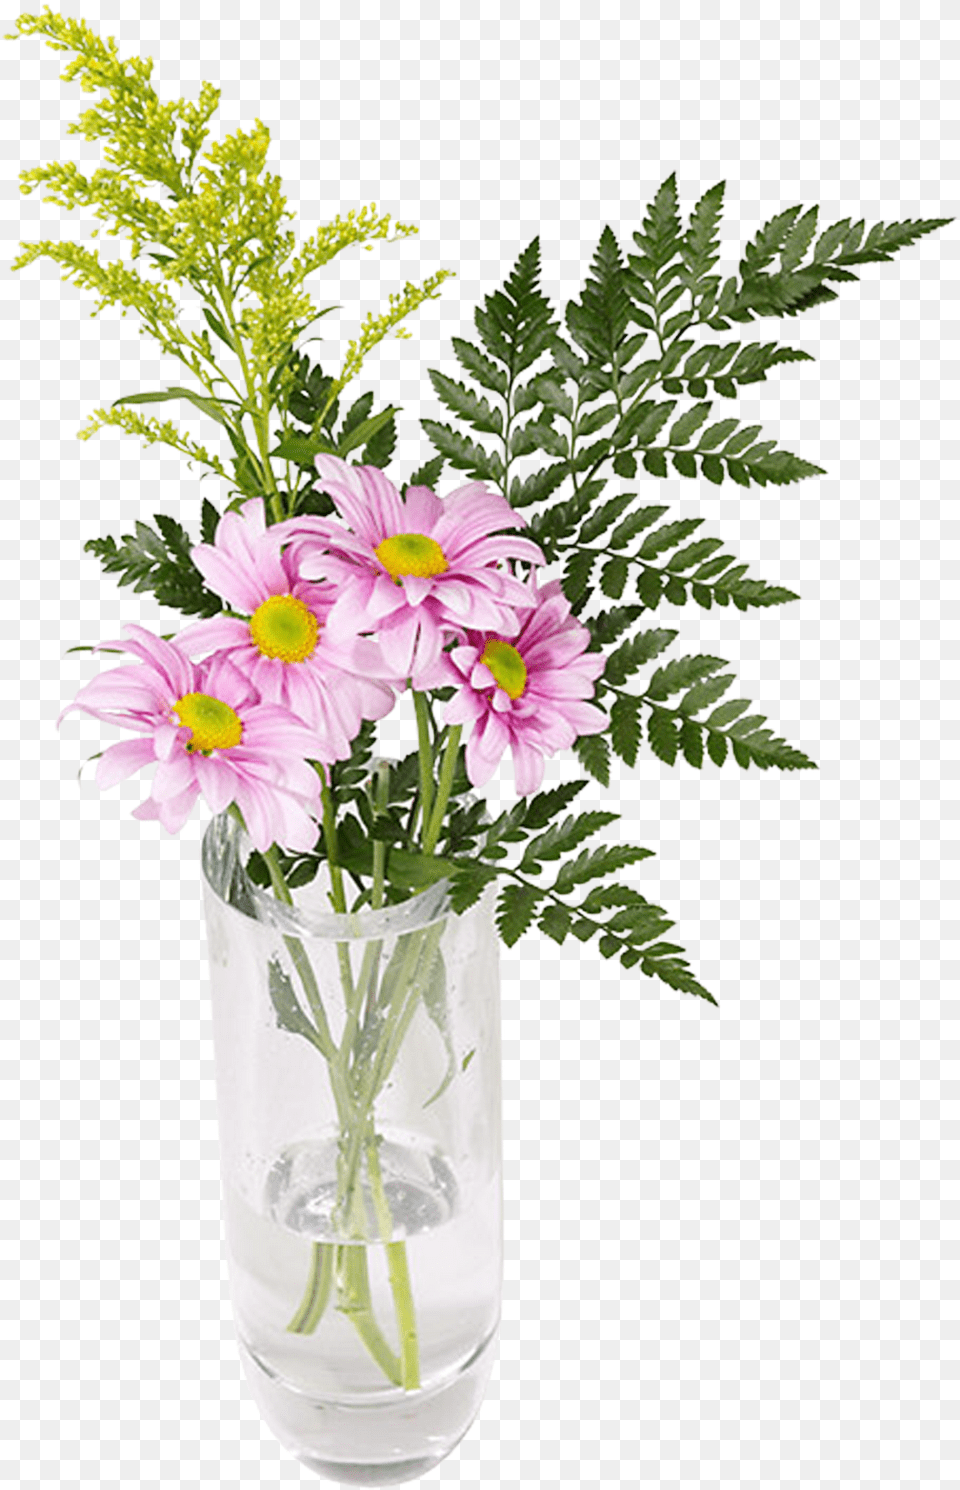 Imgenes De Arreglos Florales En Floreros Bouquet, Vase, Pottery, Flower, Flower Arrangement Free Transparent Png